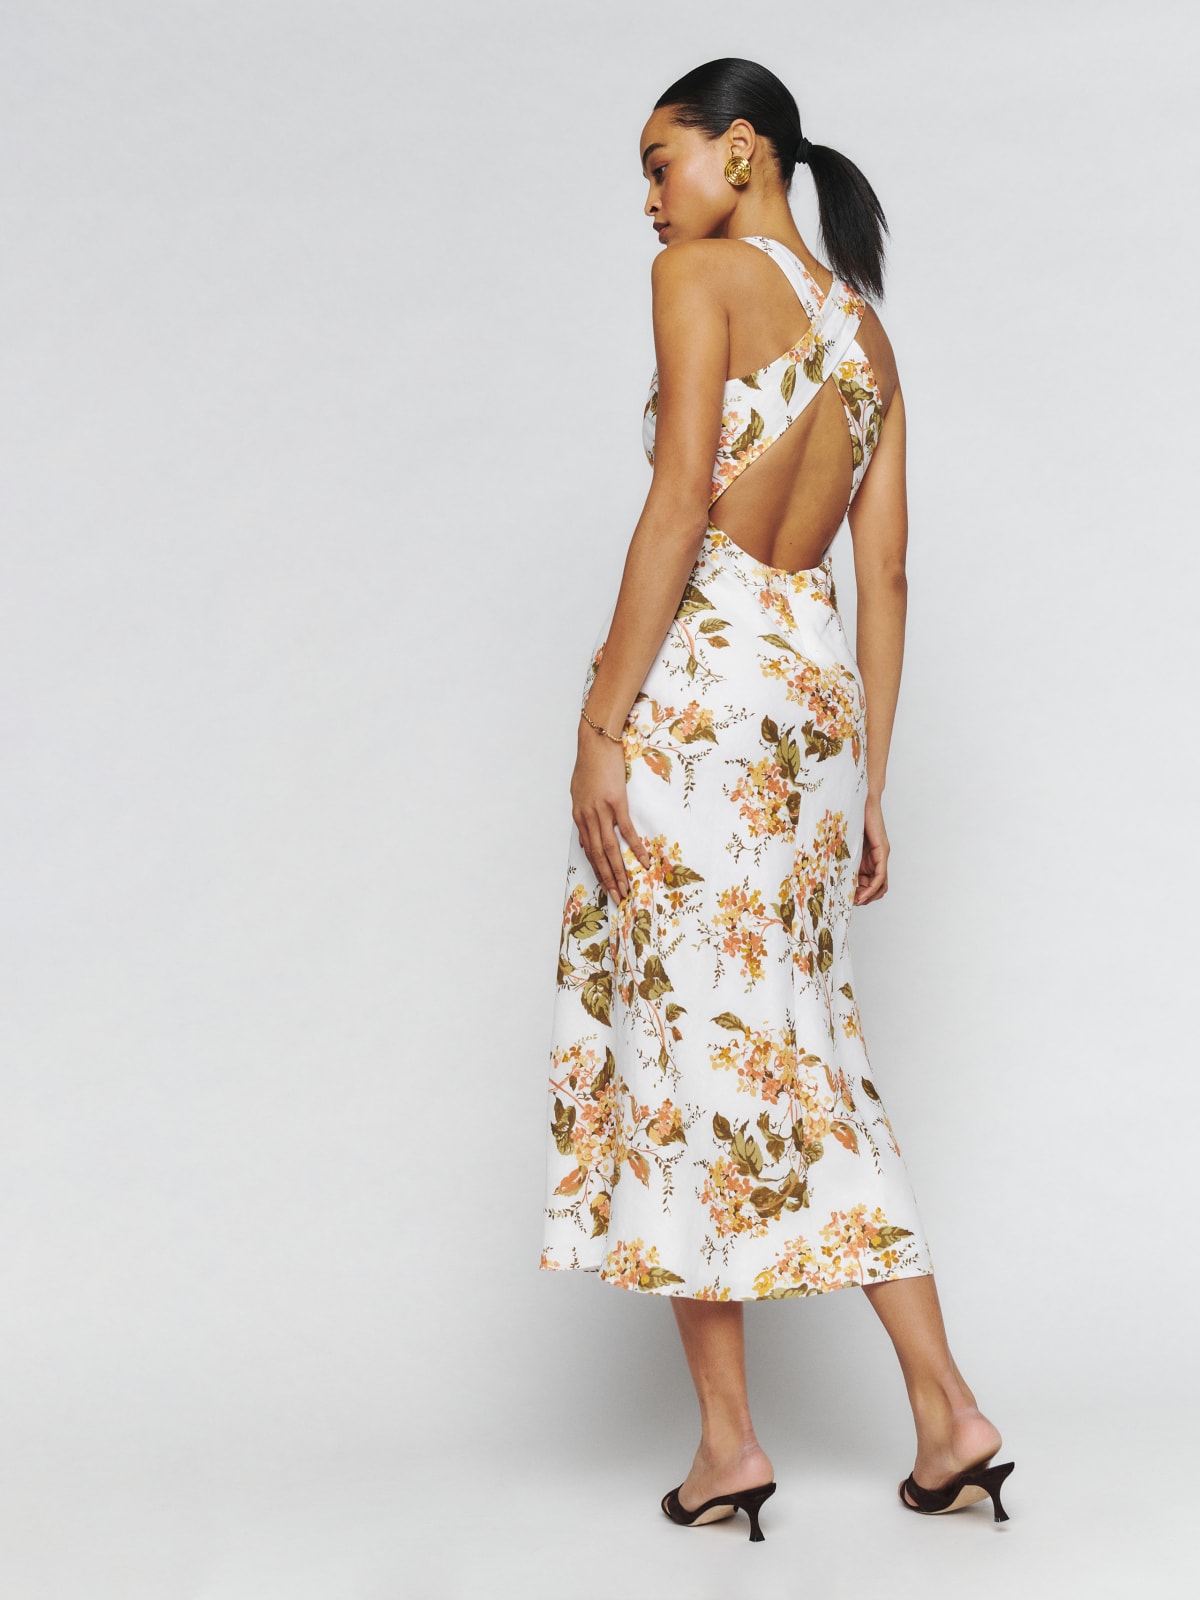 Casette Linen Dress | Reformation (US & AU)